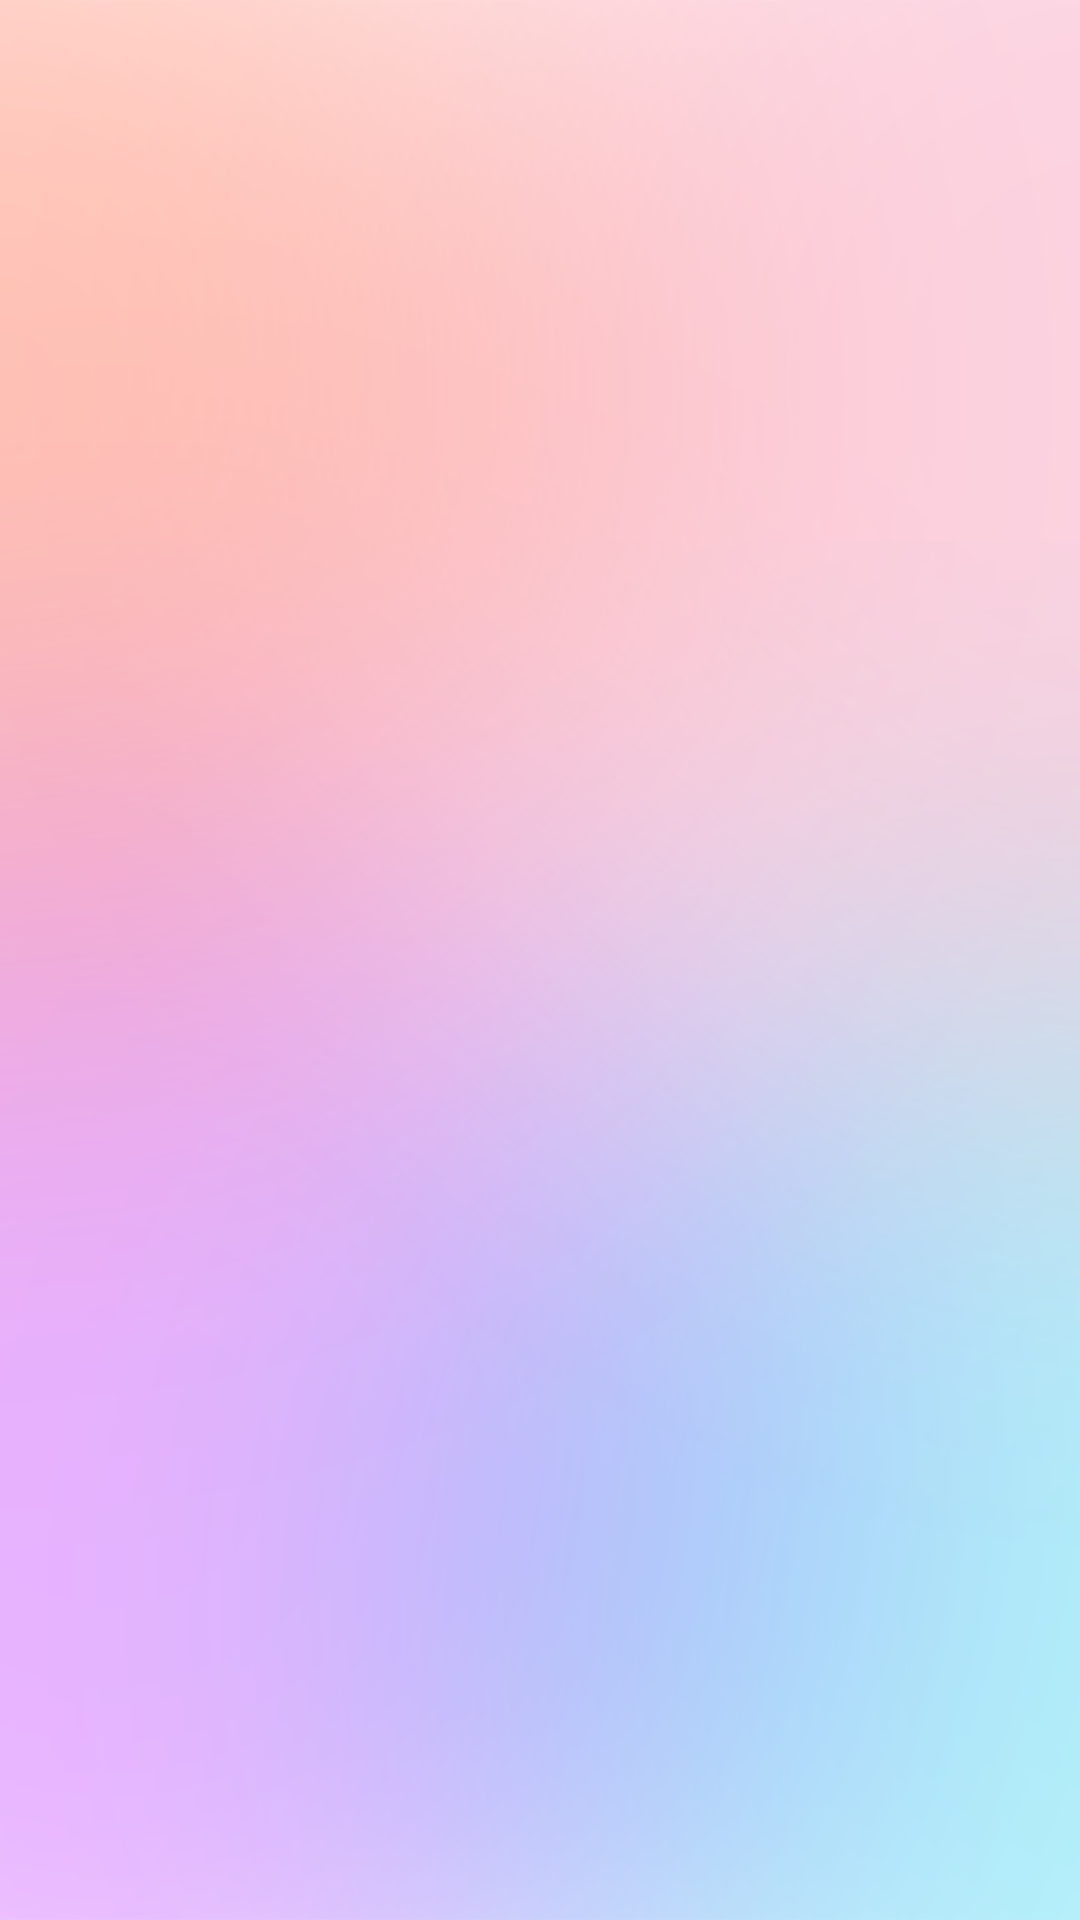 Pastel Pink Gradient Iphone Wallpaper Iphone Wallpapers